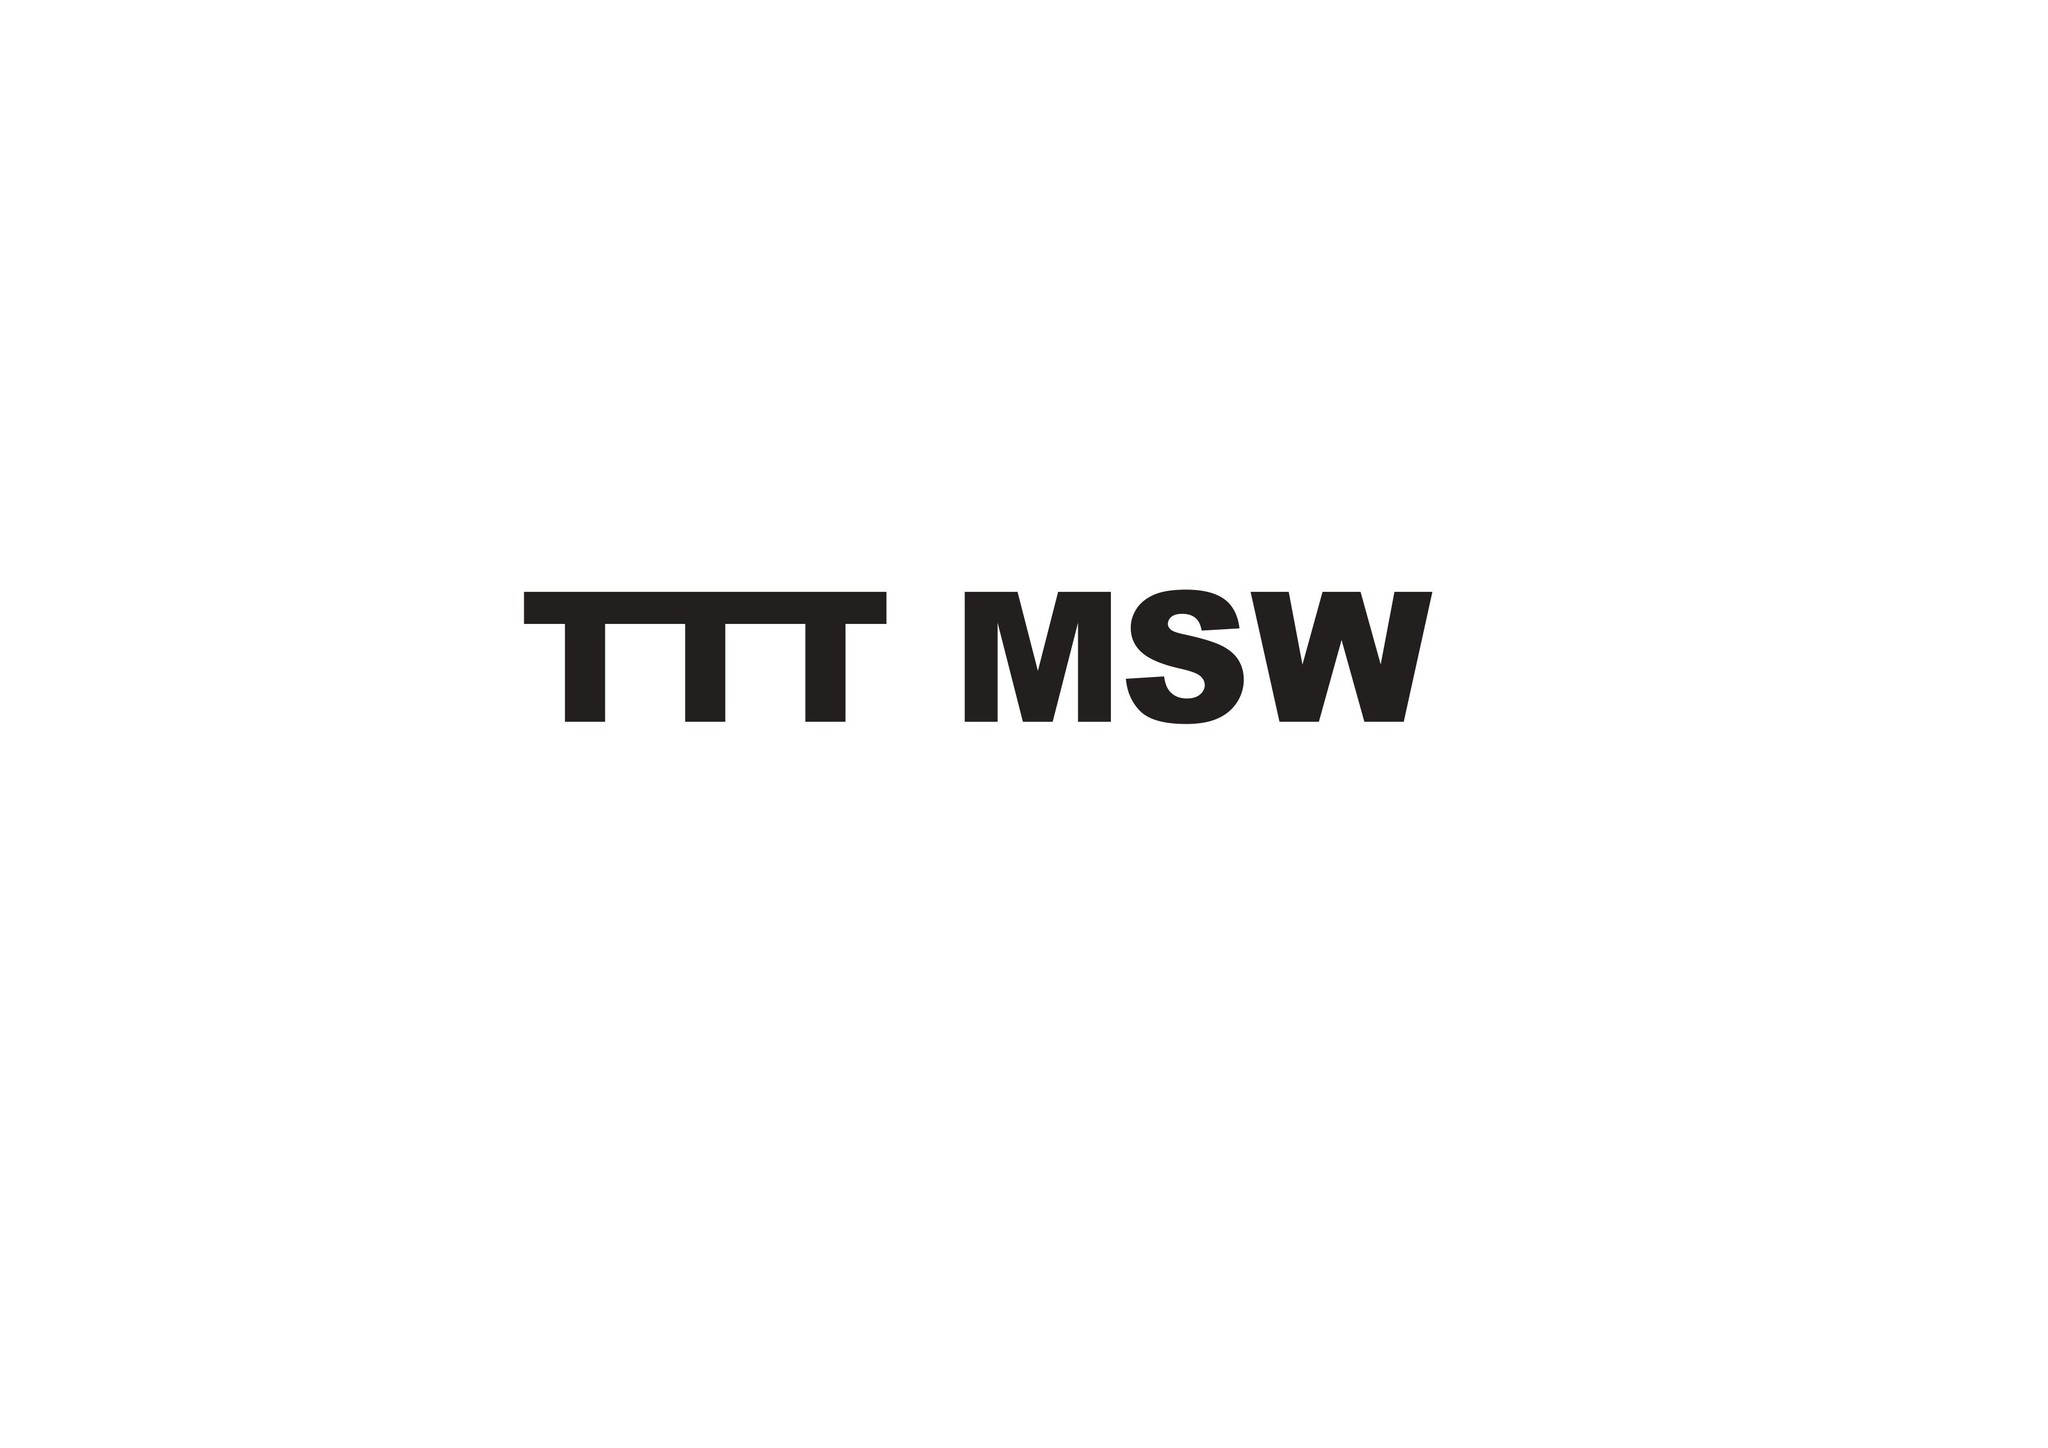 TTTMSW